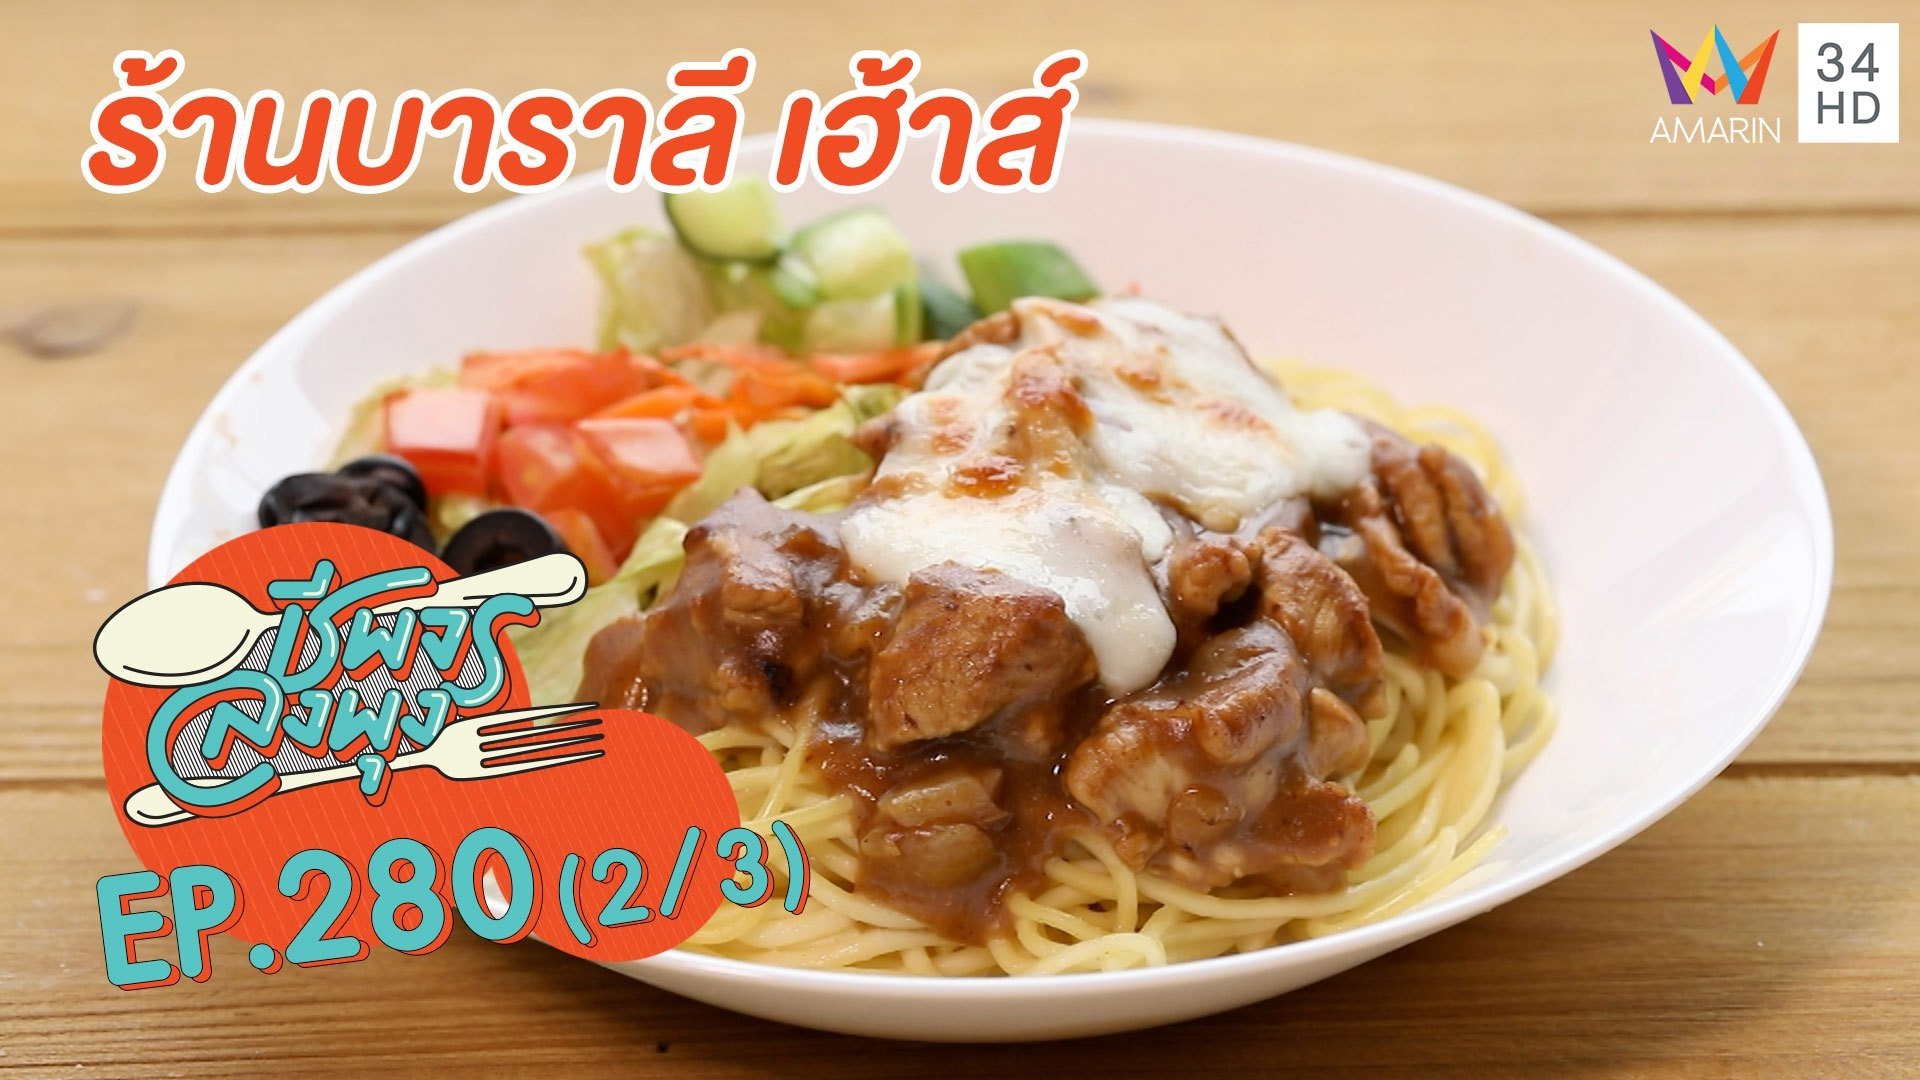 อาหารอิตาเลียนราคาน่ารัก'ร้านบาราลี เฮ้าส์'อร่อยถูกปากคนไทย | ชีพจรลงพุง | 27 ก.พ. 64 (2/3) | AMARIN TVHD34